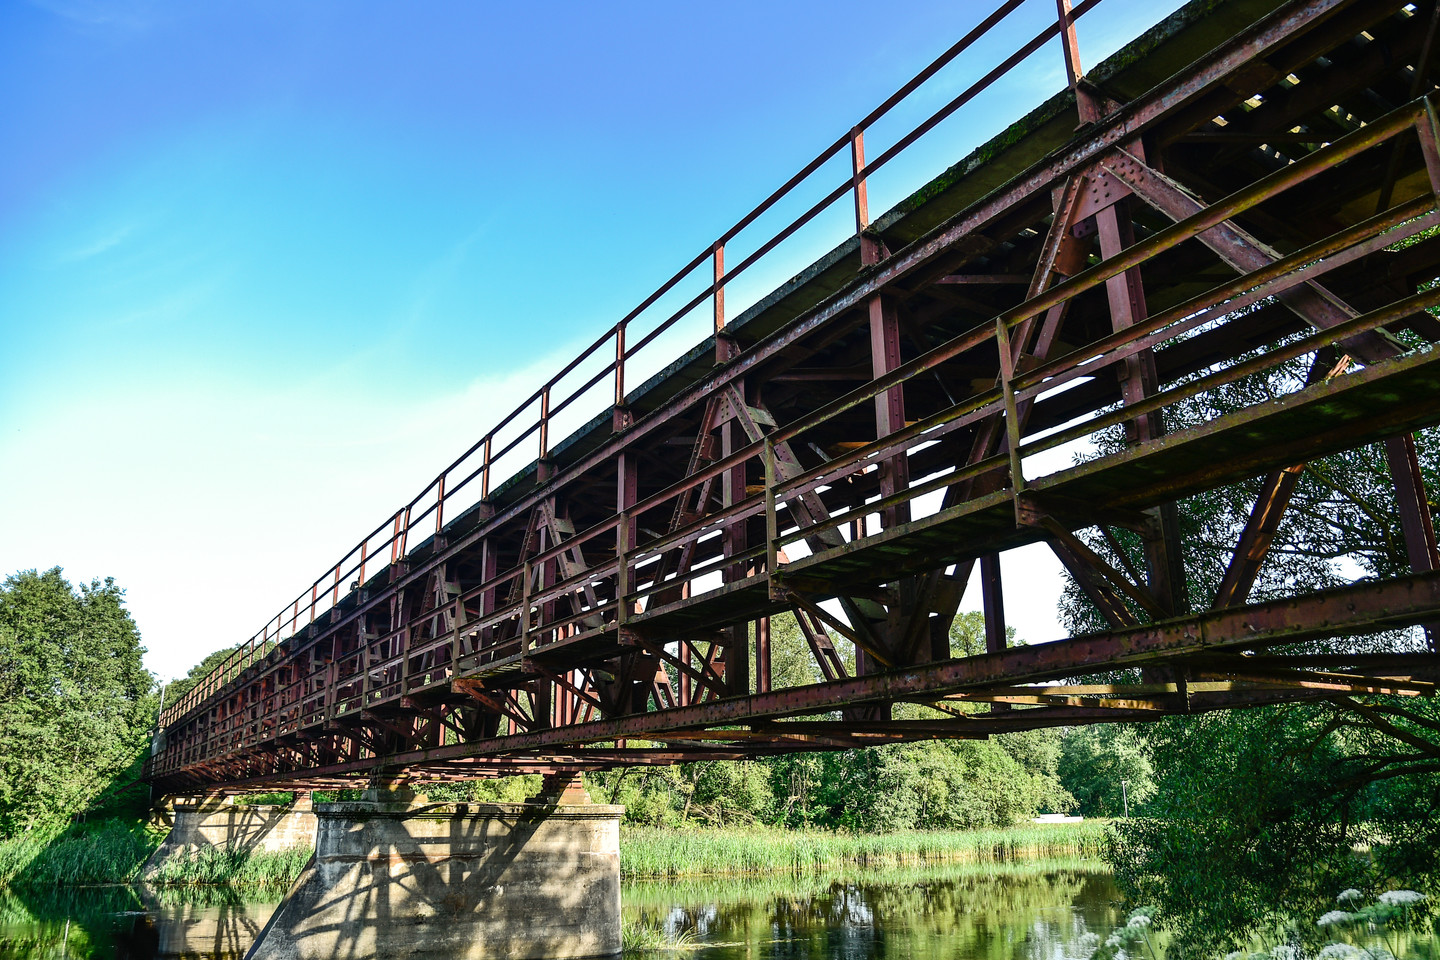  Anykščių geležinkelio tiltas per Šventosios upę, perstatytas po karo, yra didžiausias siaurojo geležinkelio tiltas, naudojamas ir dabar.<br> V.Ščiavinsko nuotr.